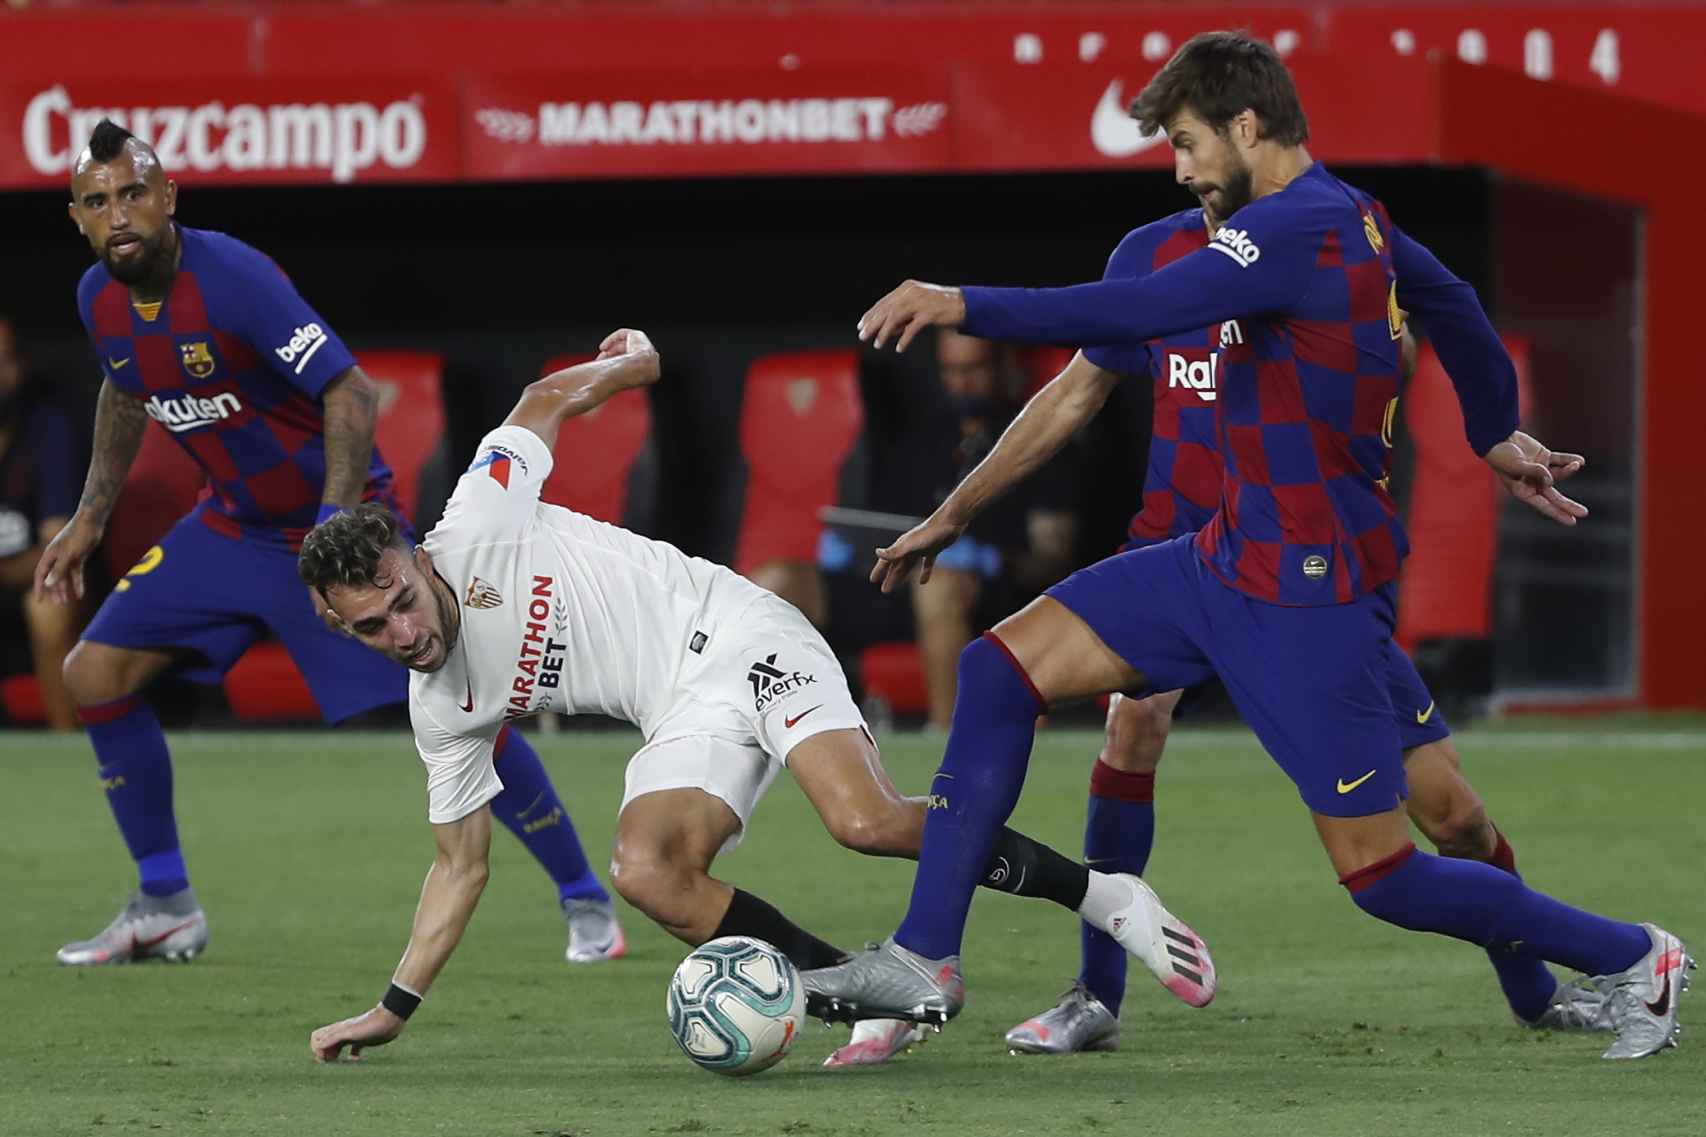 El futbolista del Barcelona CF Gerard Piqué disputa el balón en un partido de liga en el estadio del Sevilla, el 19 de junio de 2020.